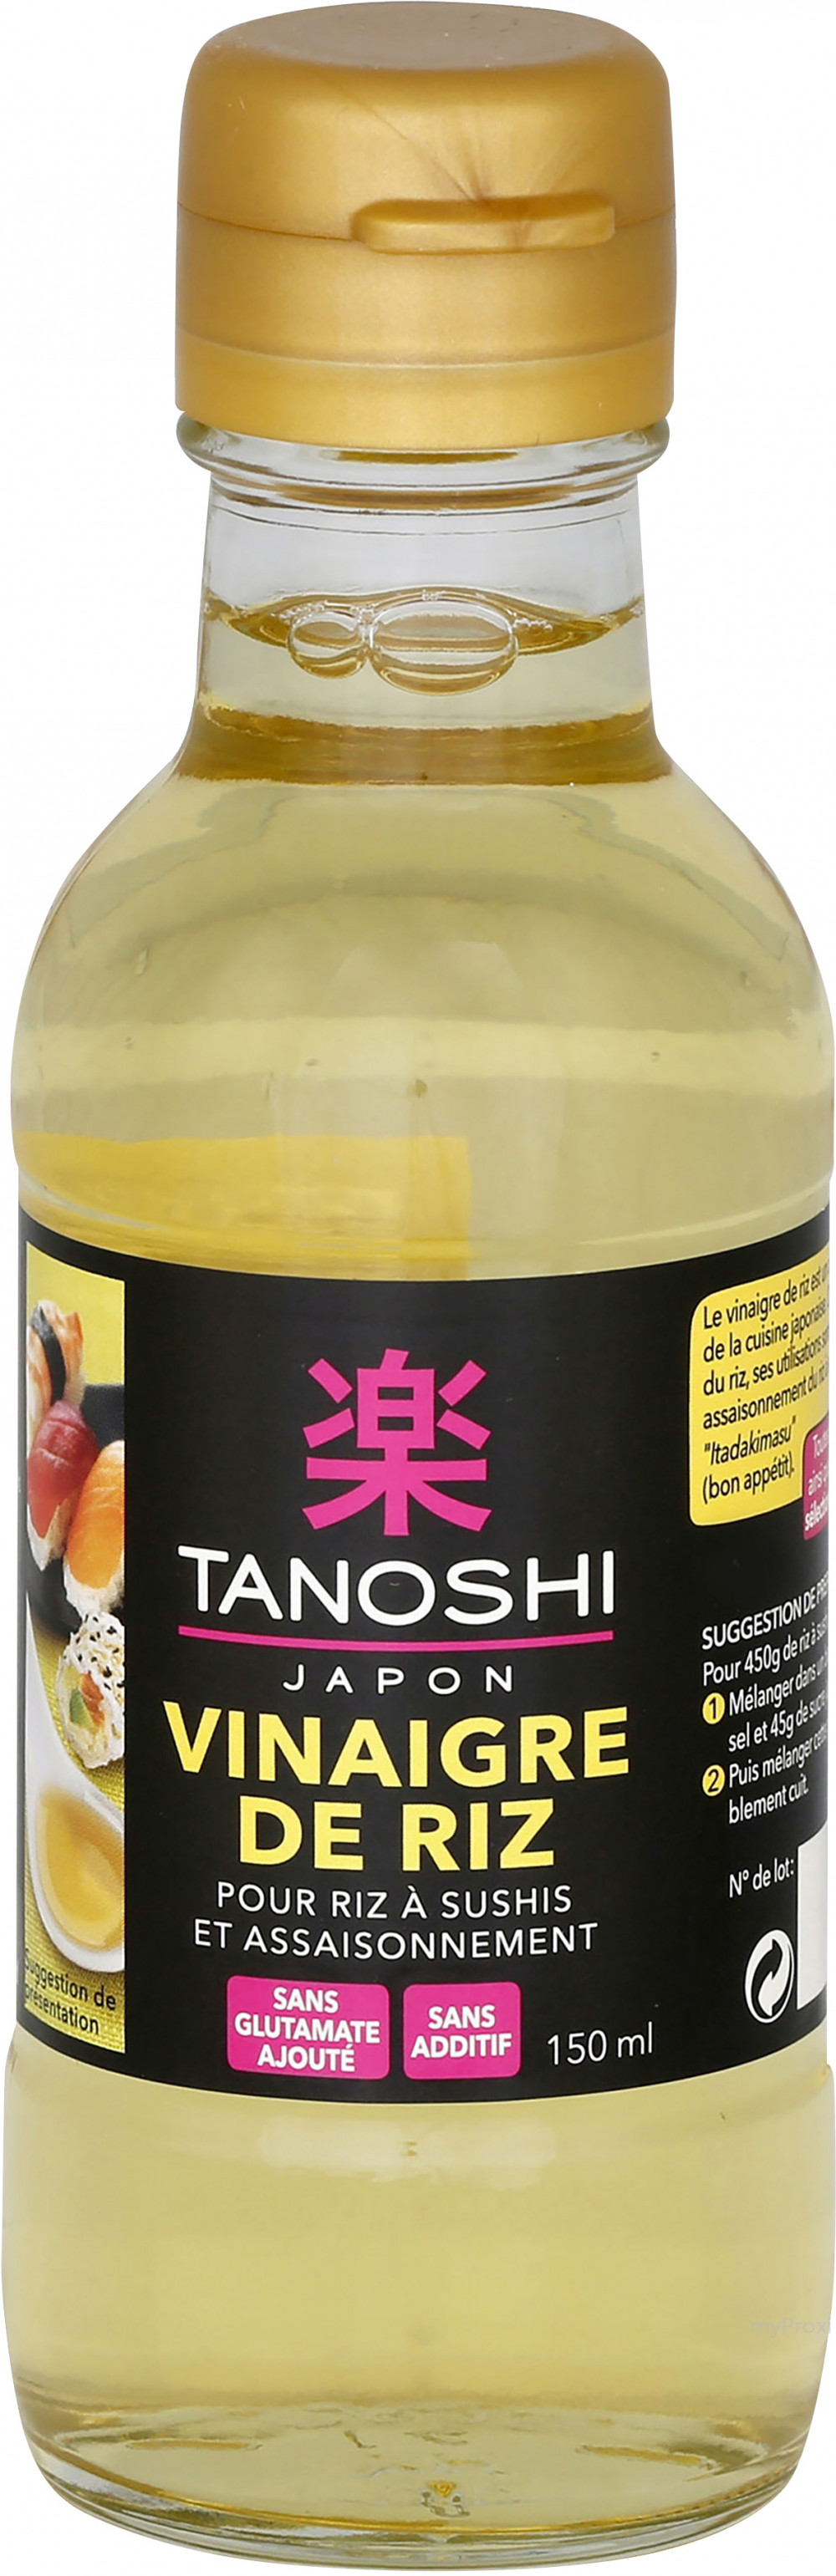 Vinaigre de Riz Bio - TANOSHI